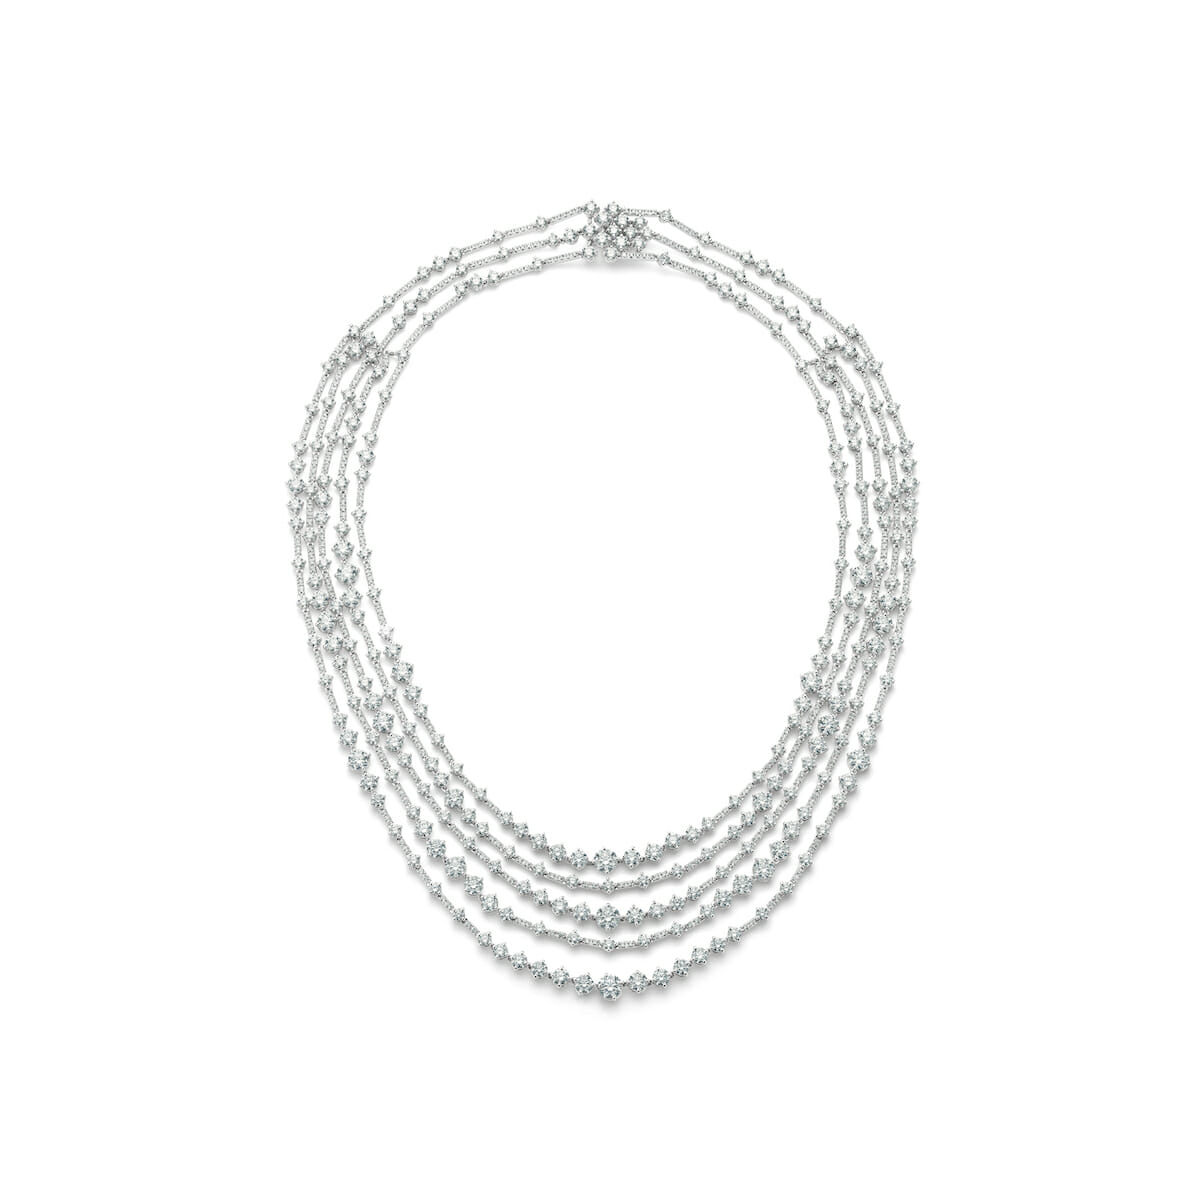 De Beers “Arpeggia” five-line necklace